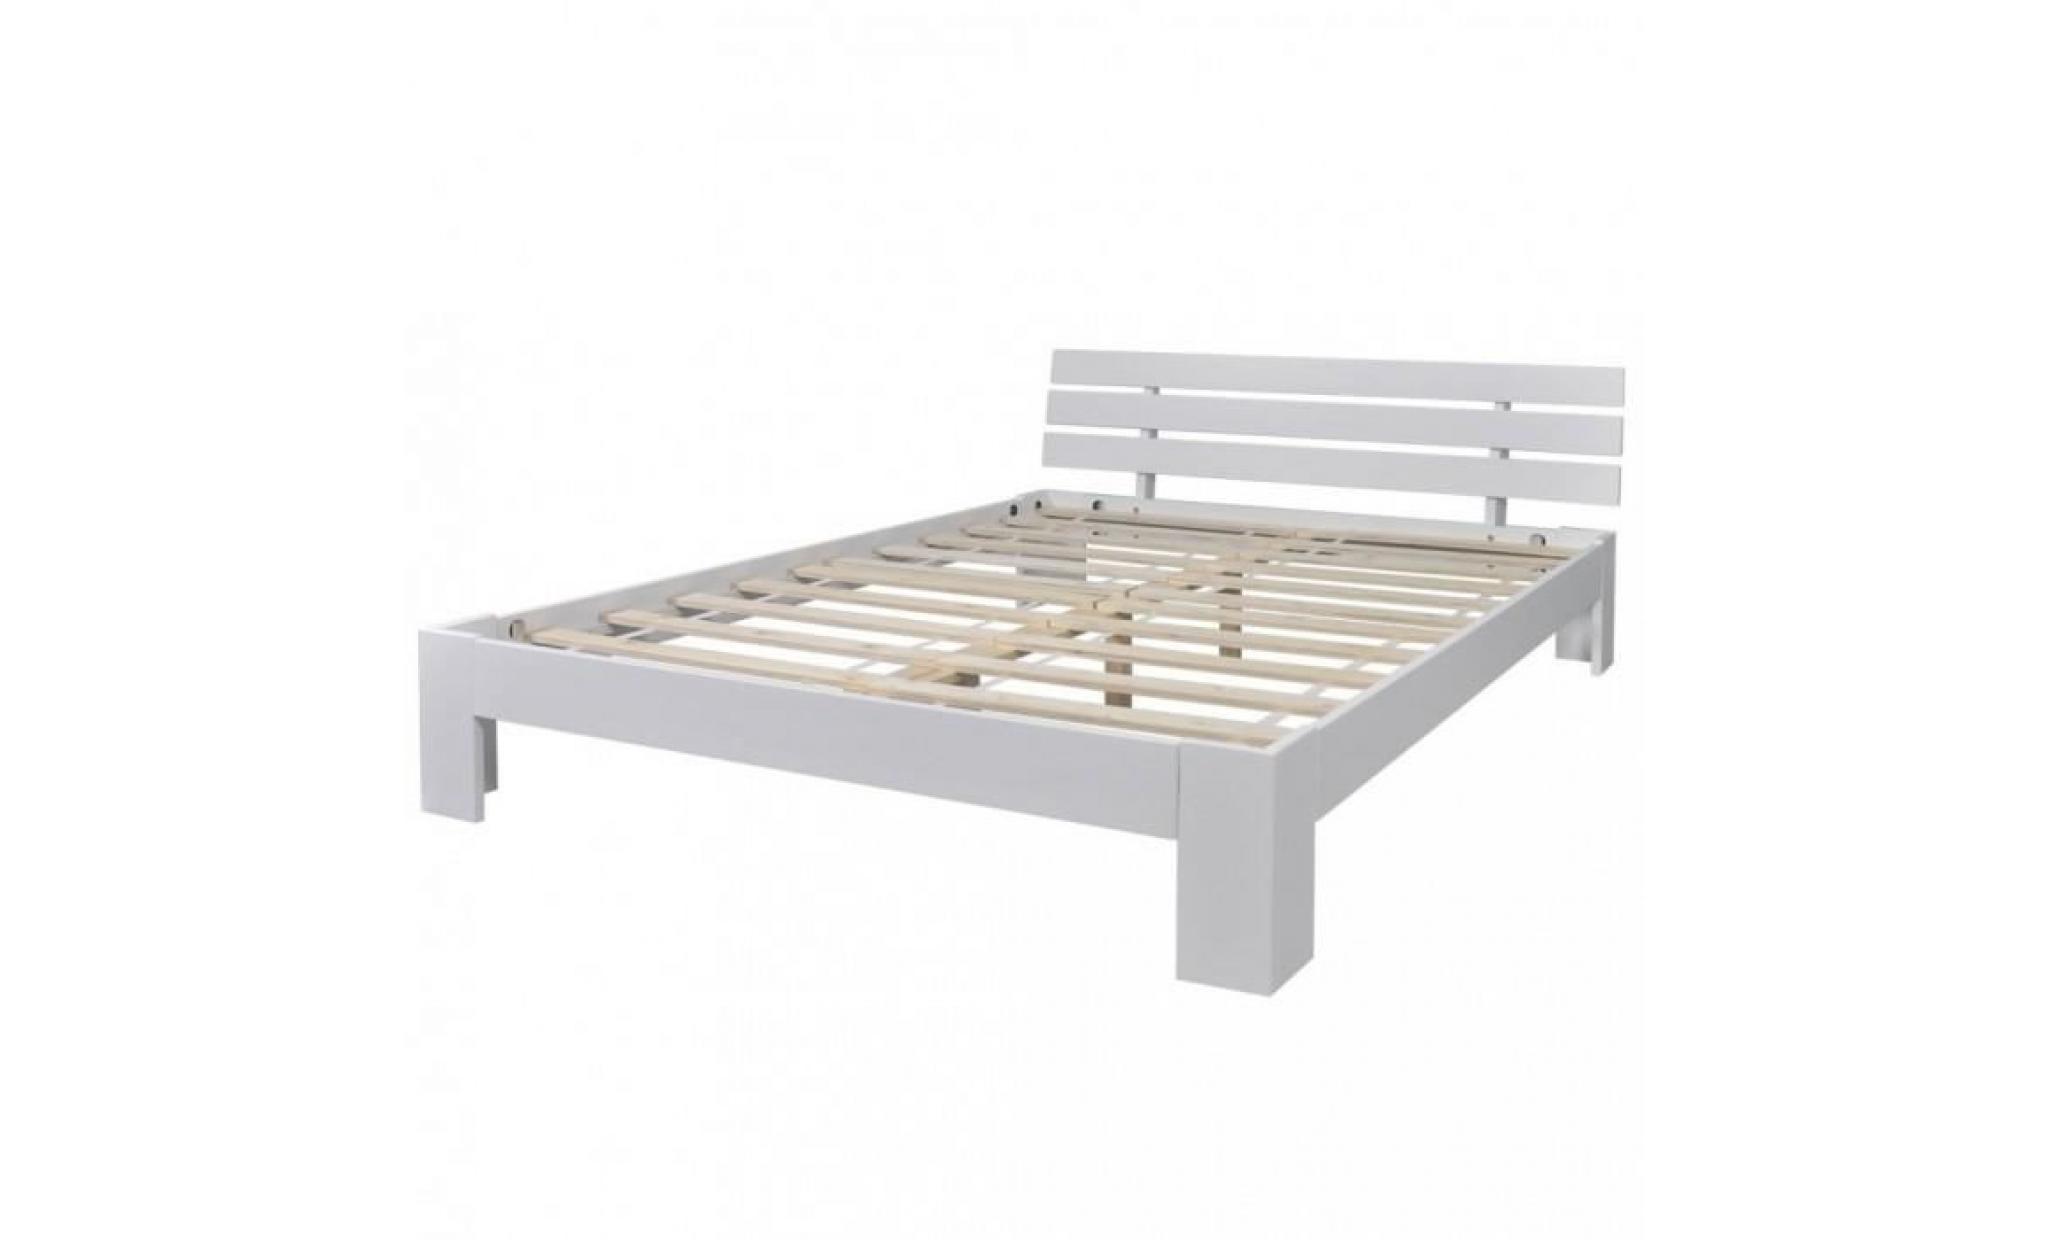 r190 couleur blanc djibouti ce lit en bois de pin a un design simple mais elegant. c'